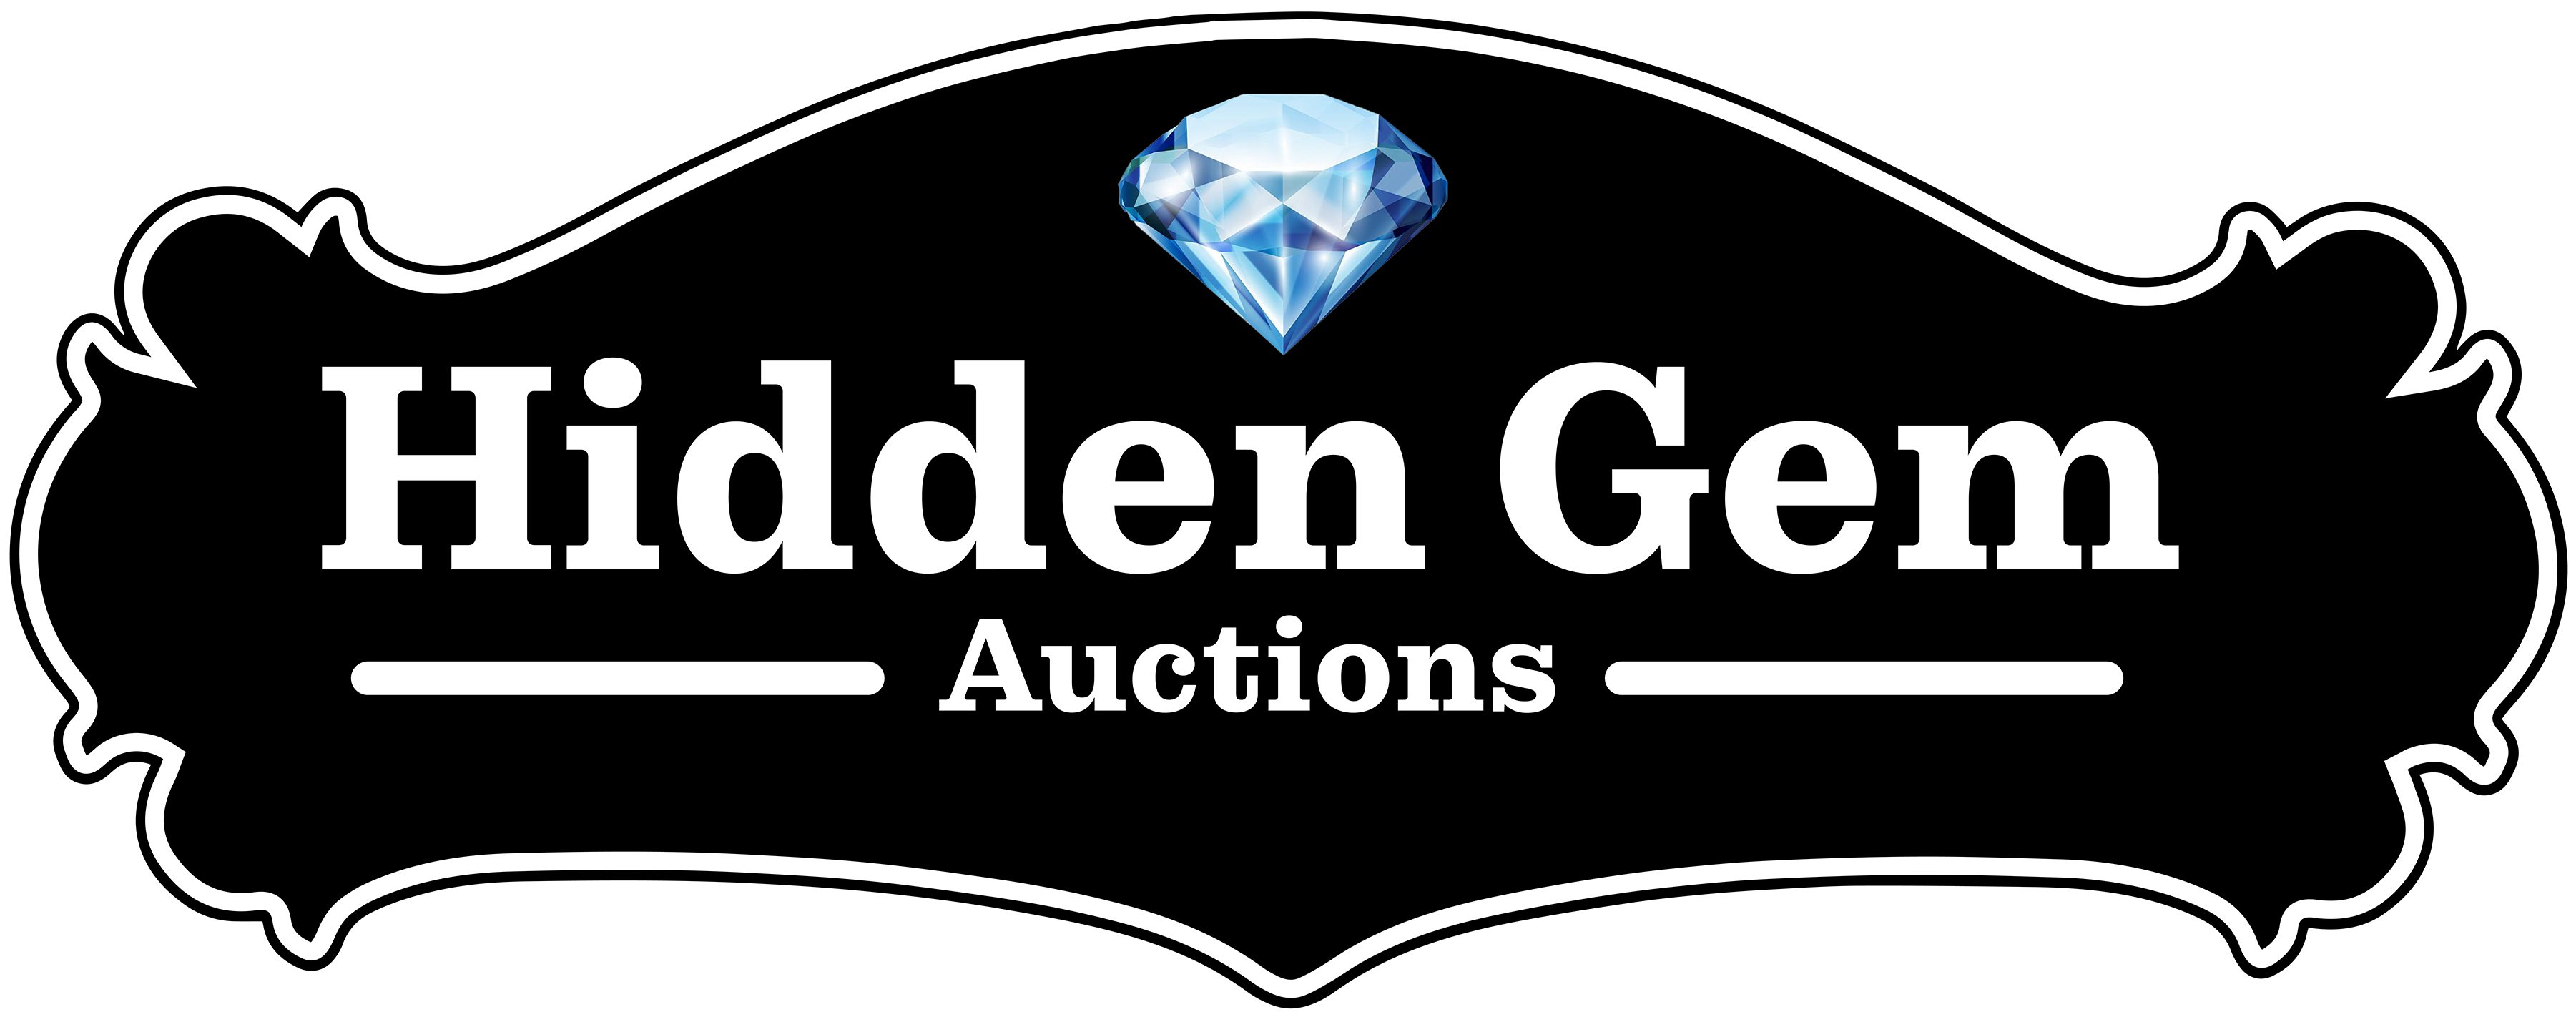 Hidden Gem Auctions